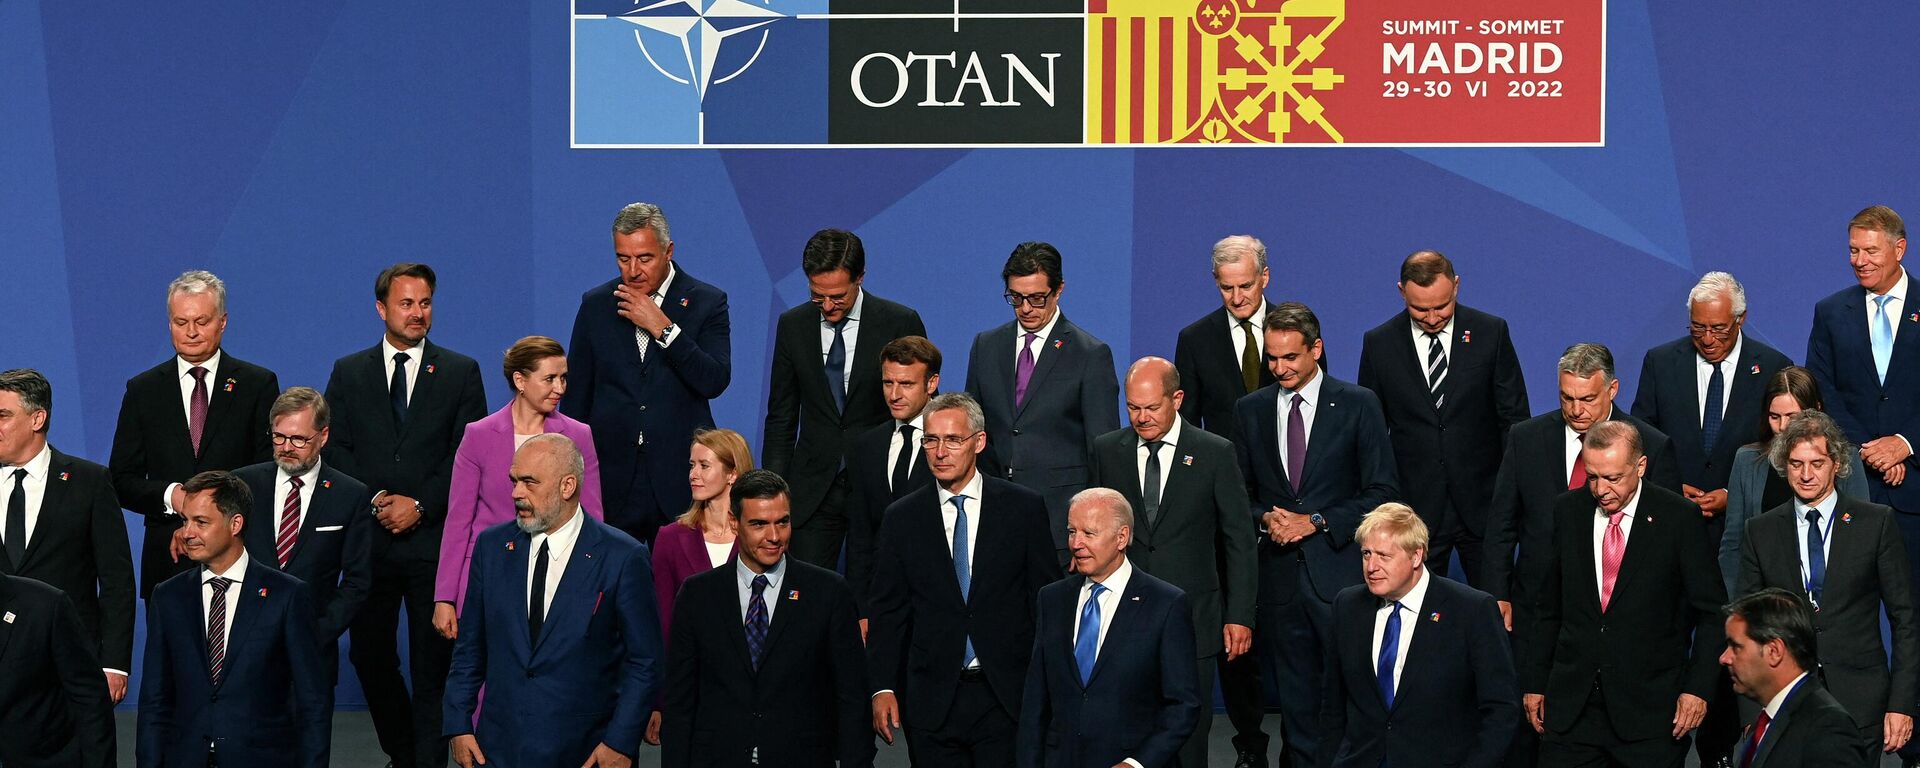 Các nhà lãnh đạo chính trị trong hội nghị thượng đỉnh NATO ở Madrid - Sputnik Việt Nam, 1920, 05.07.2022